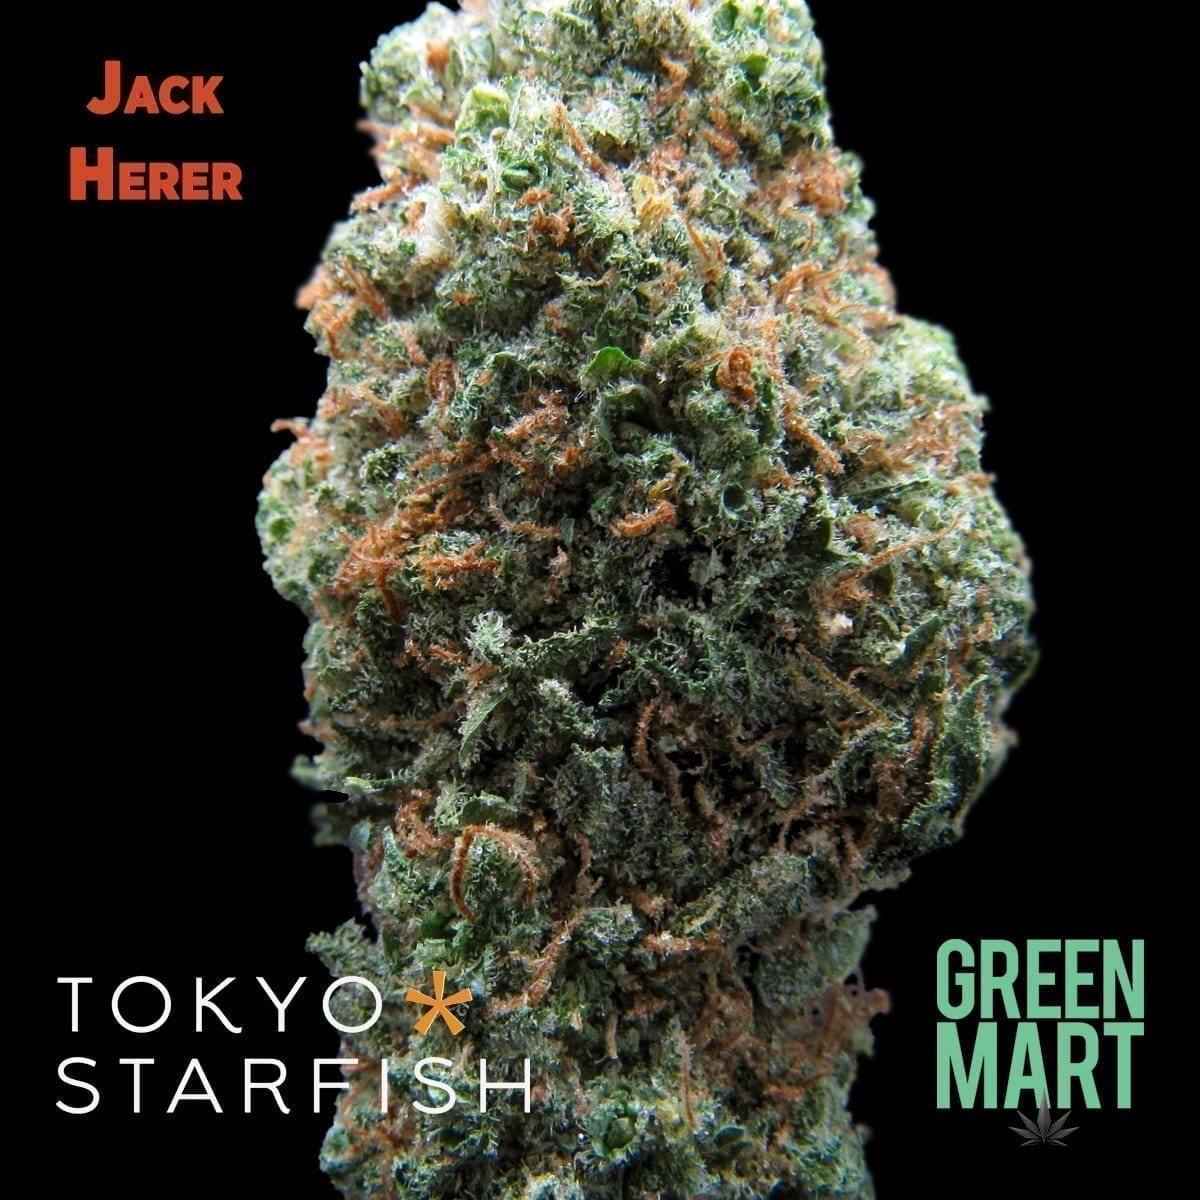 Jack Herer by Tokyo Starfish